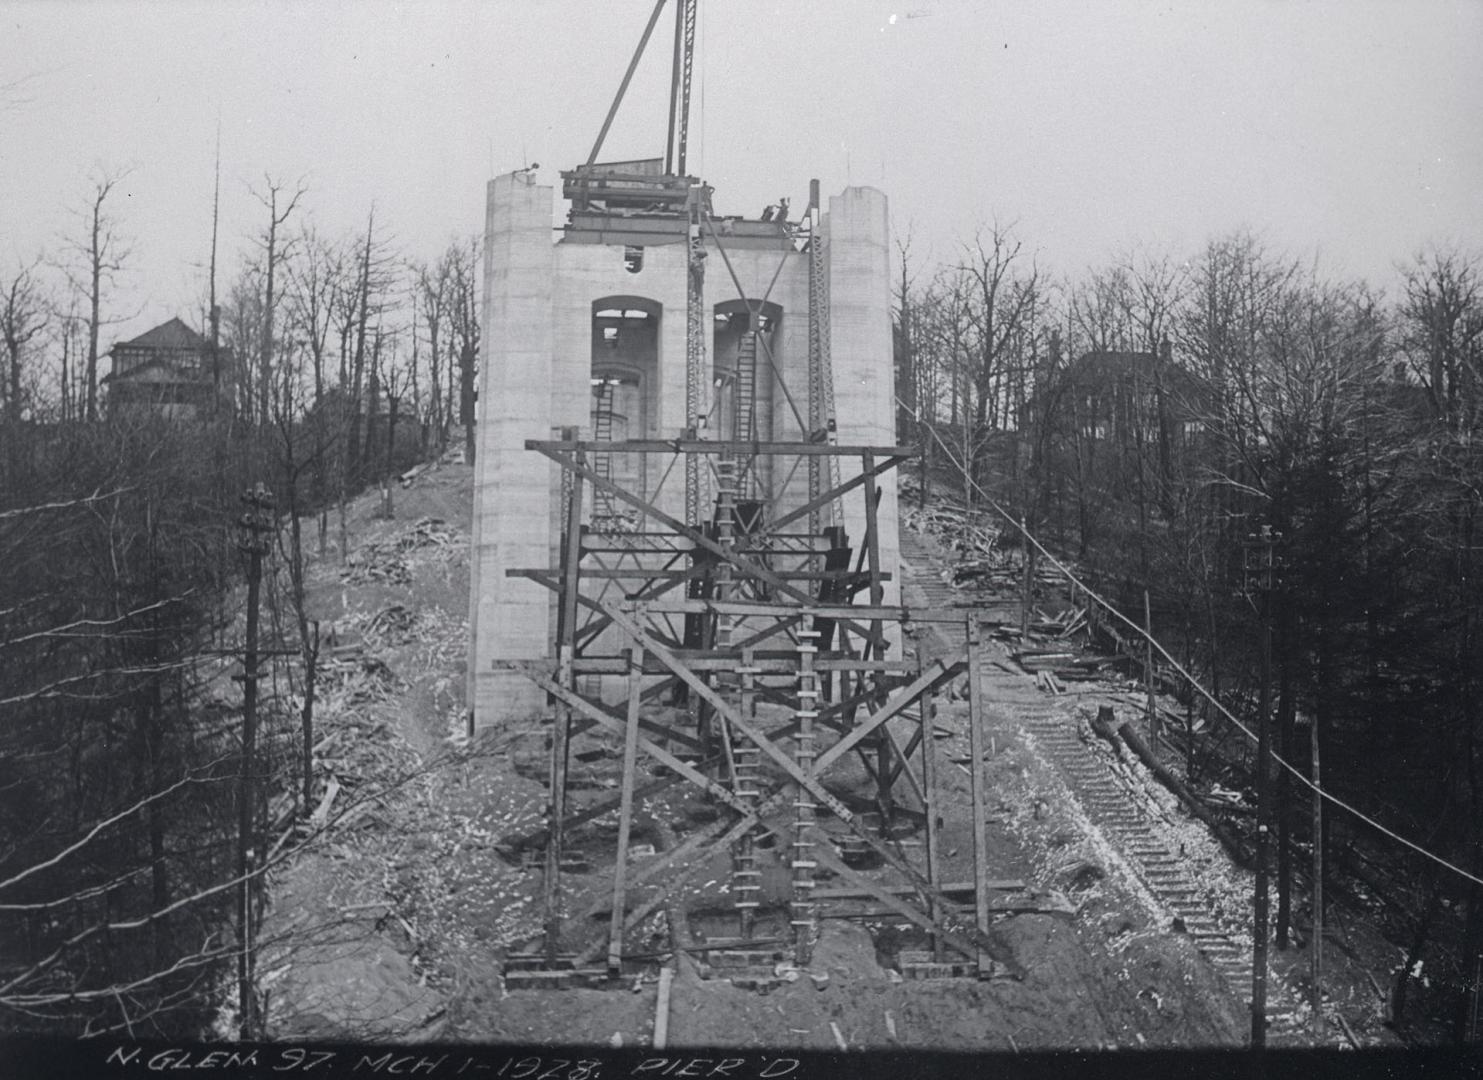 Image shows a bridge under construction.